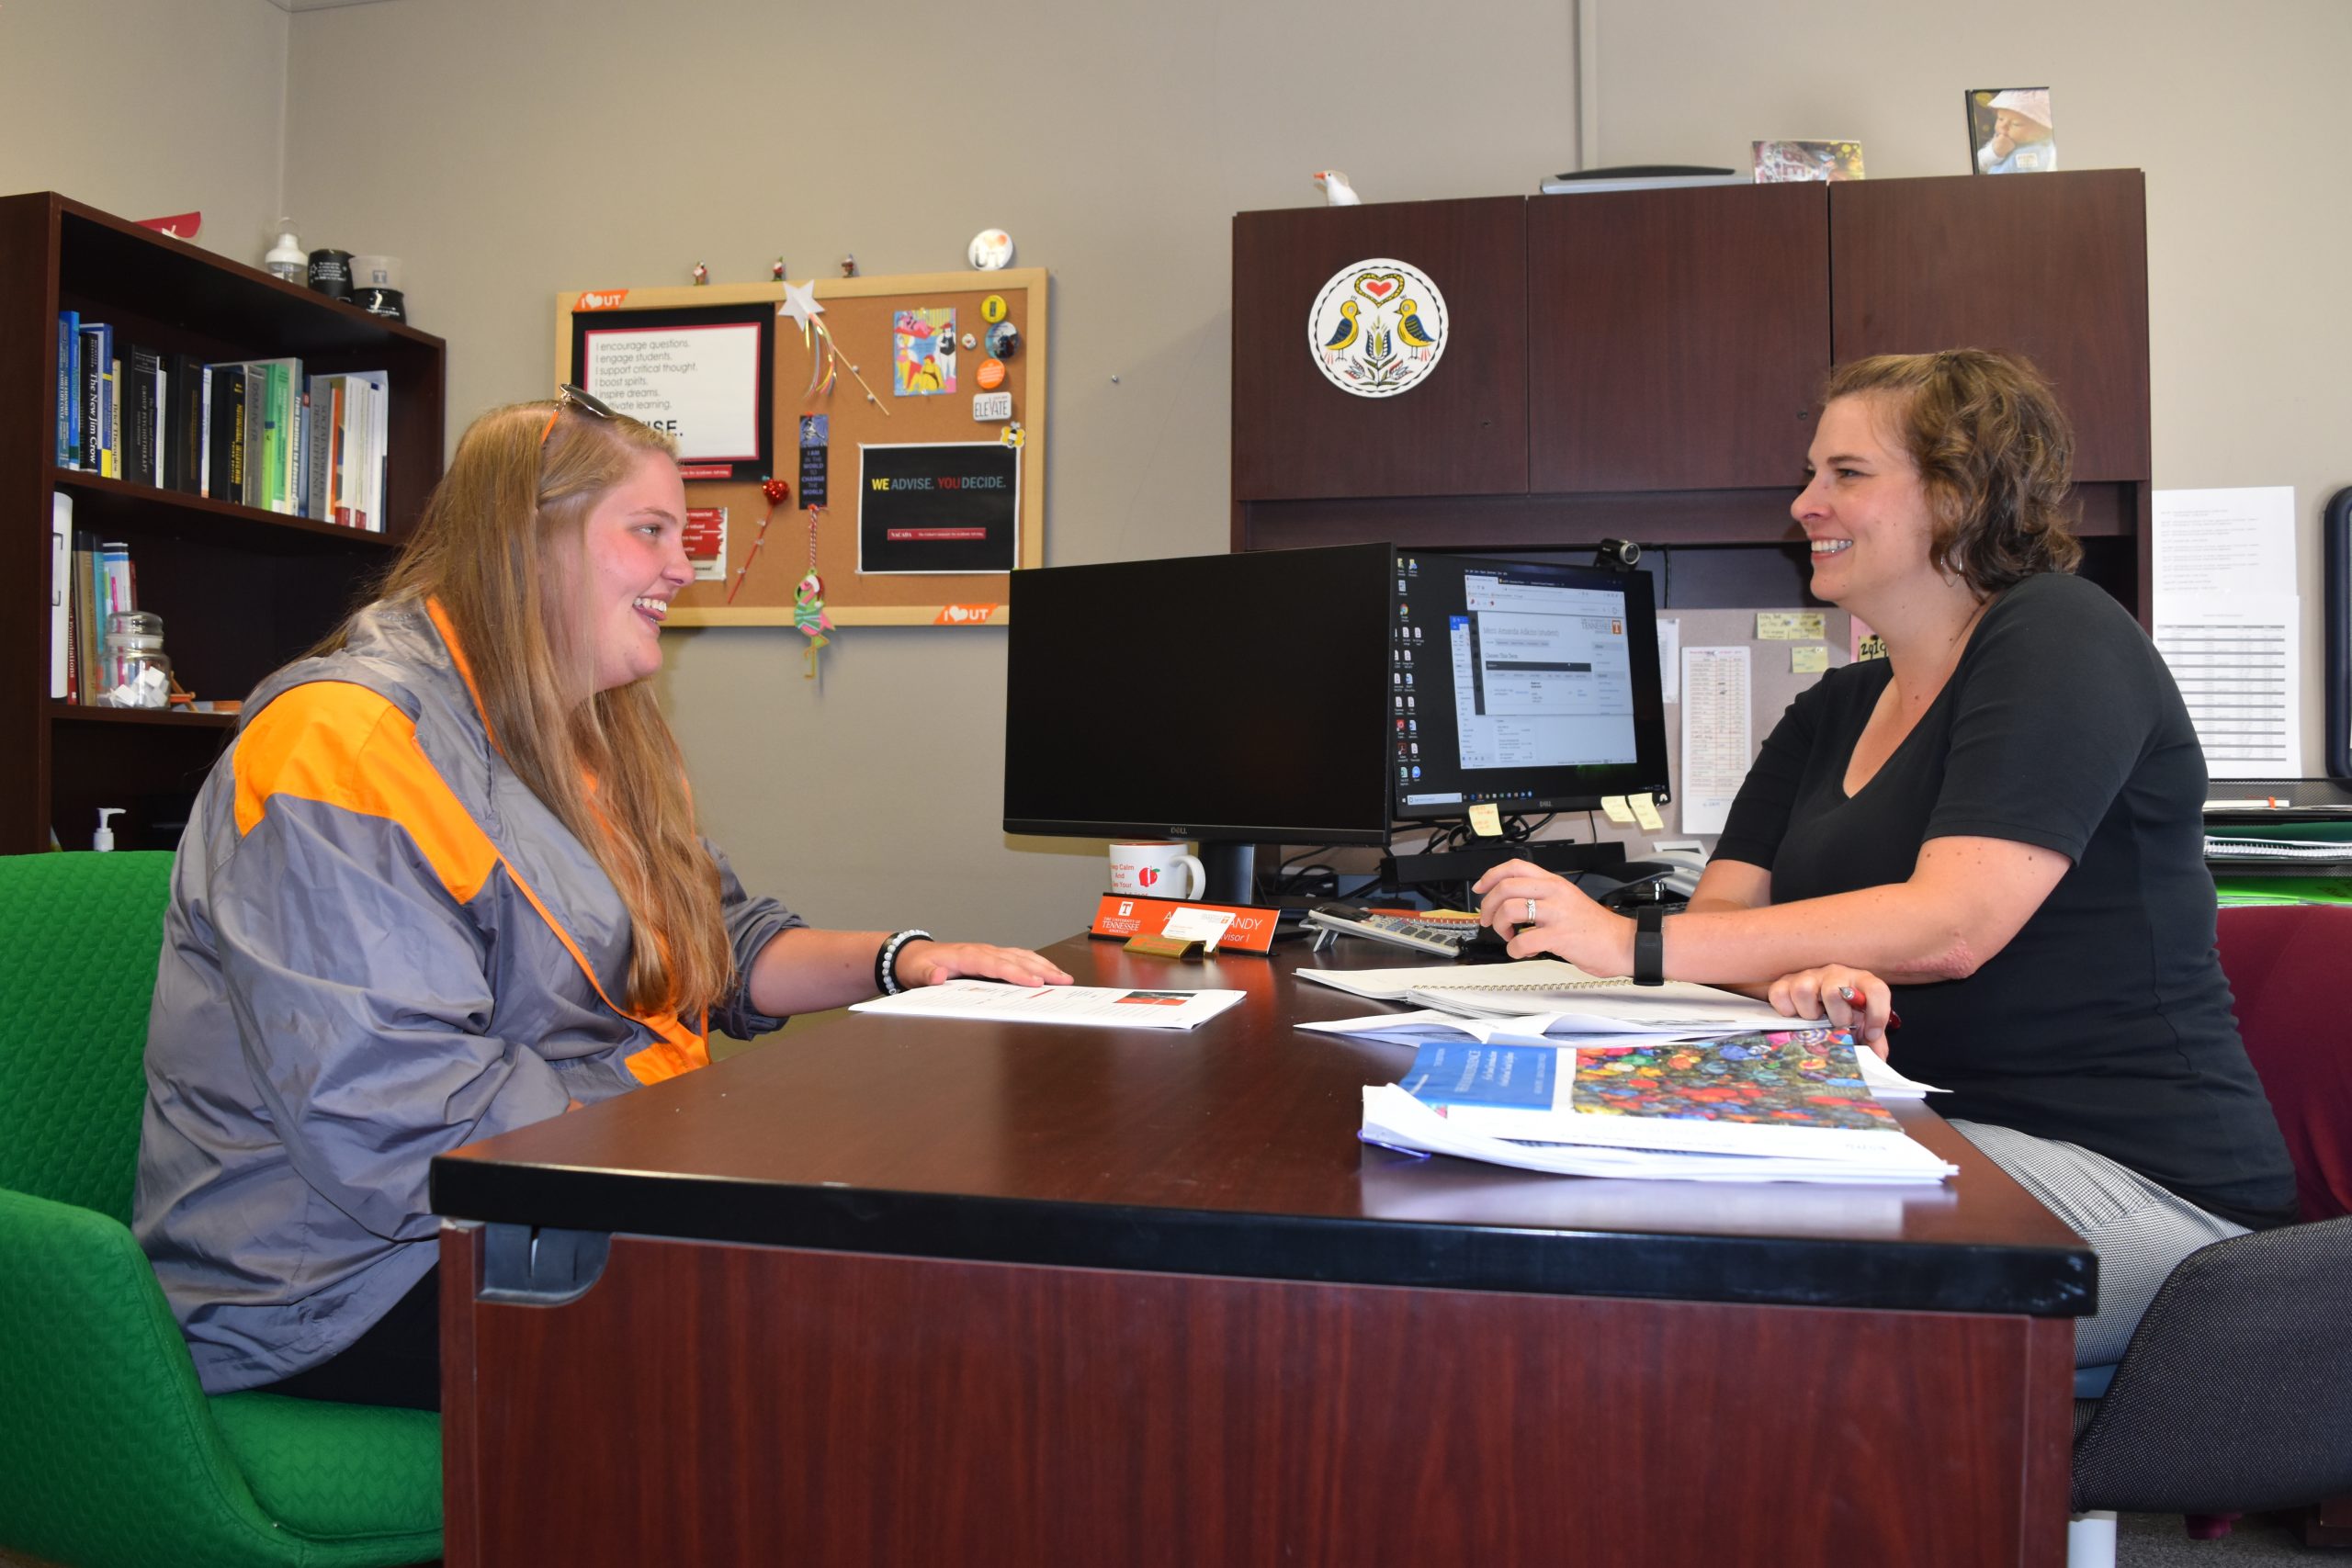 female student speaking with female advisor at her desk